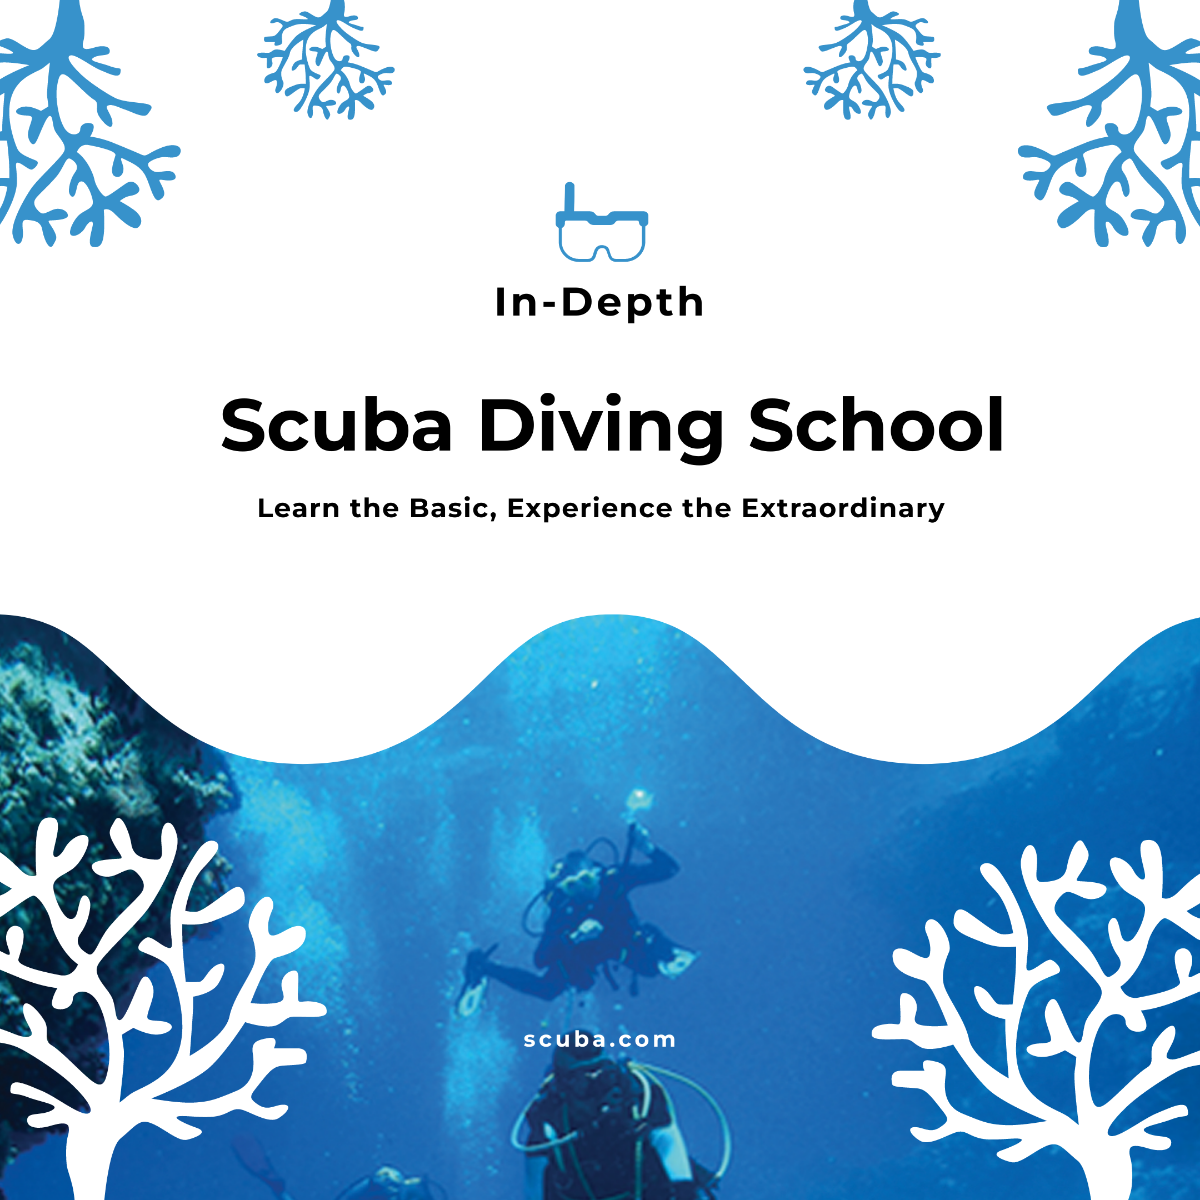 Scuba Diving School Instagram Post Template